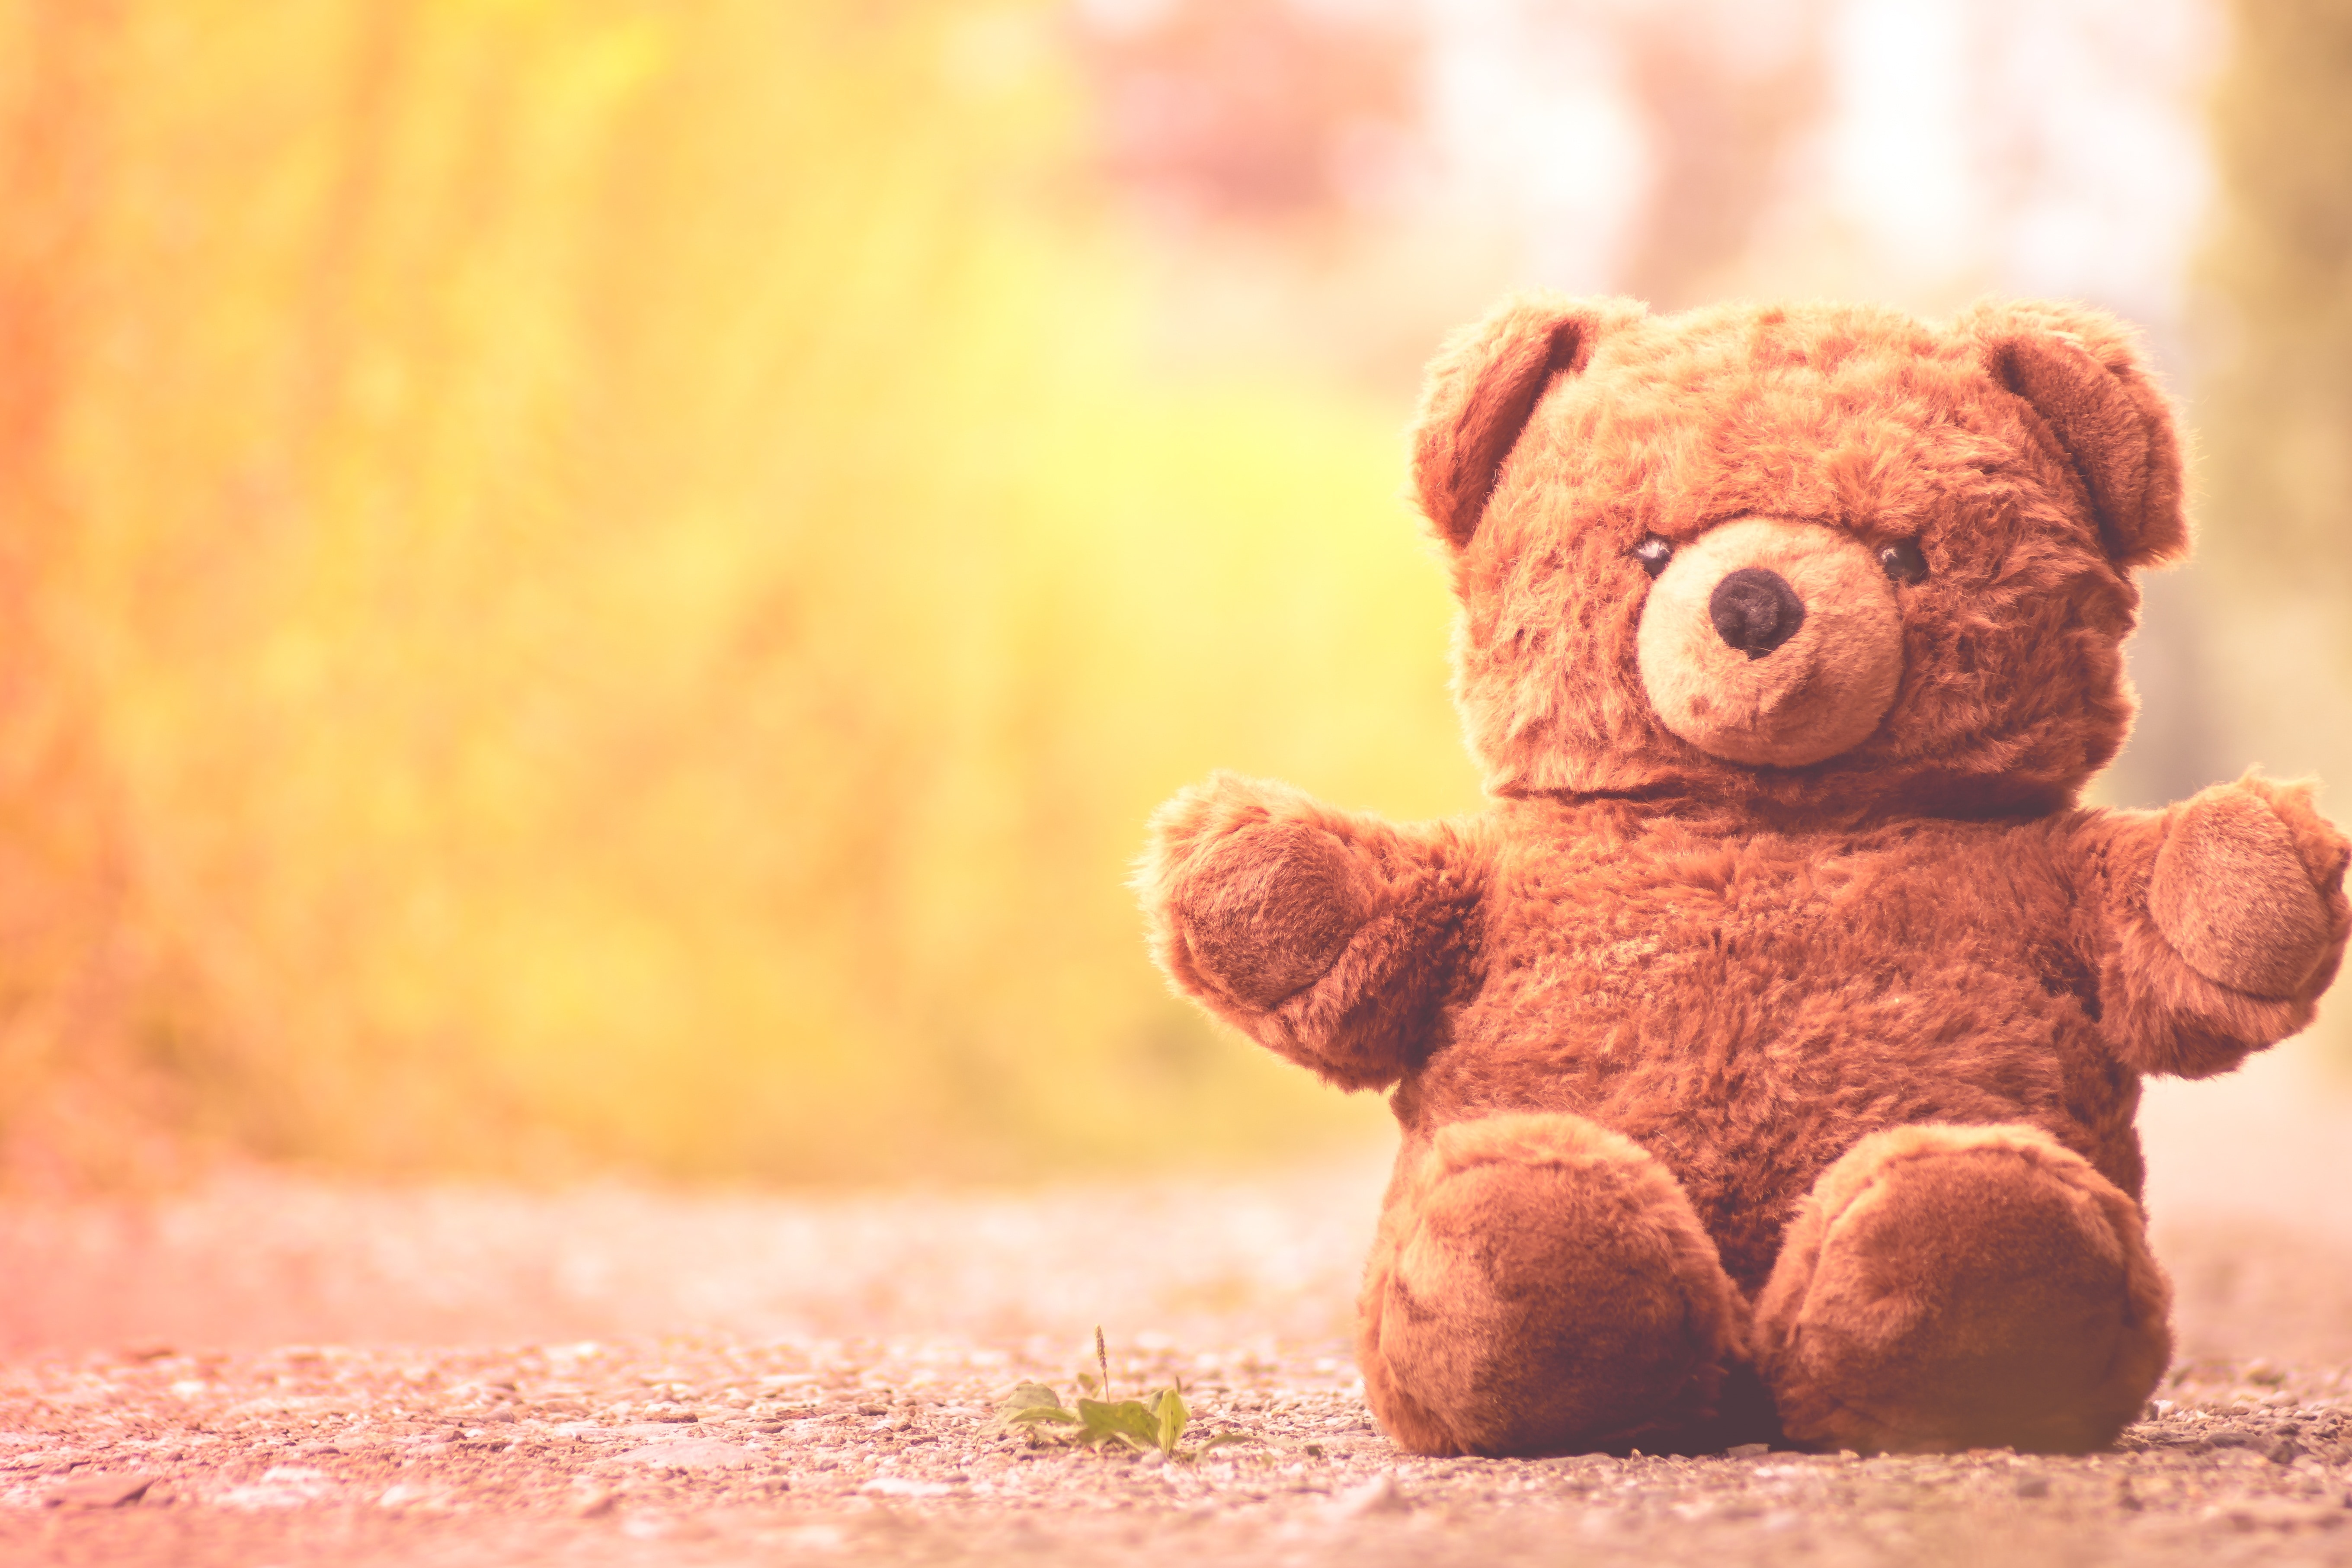 Cute, Furry Teddy Bear, Teddy Bear, teddy bear, toy